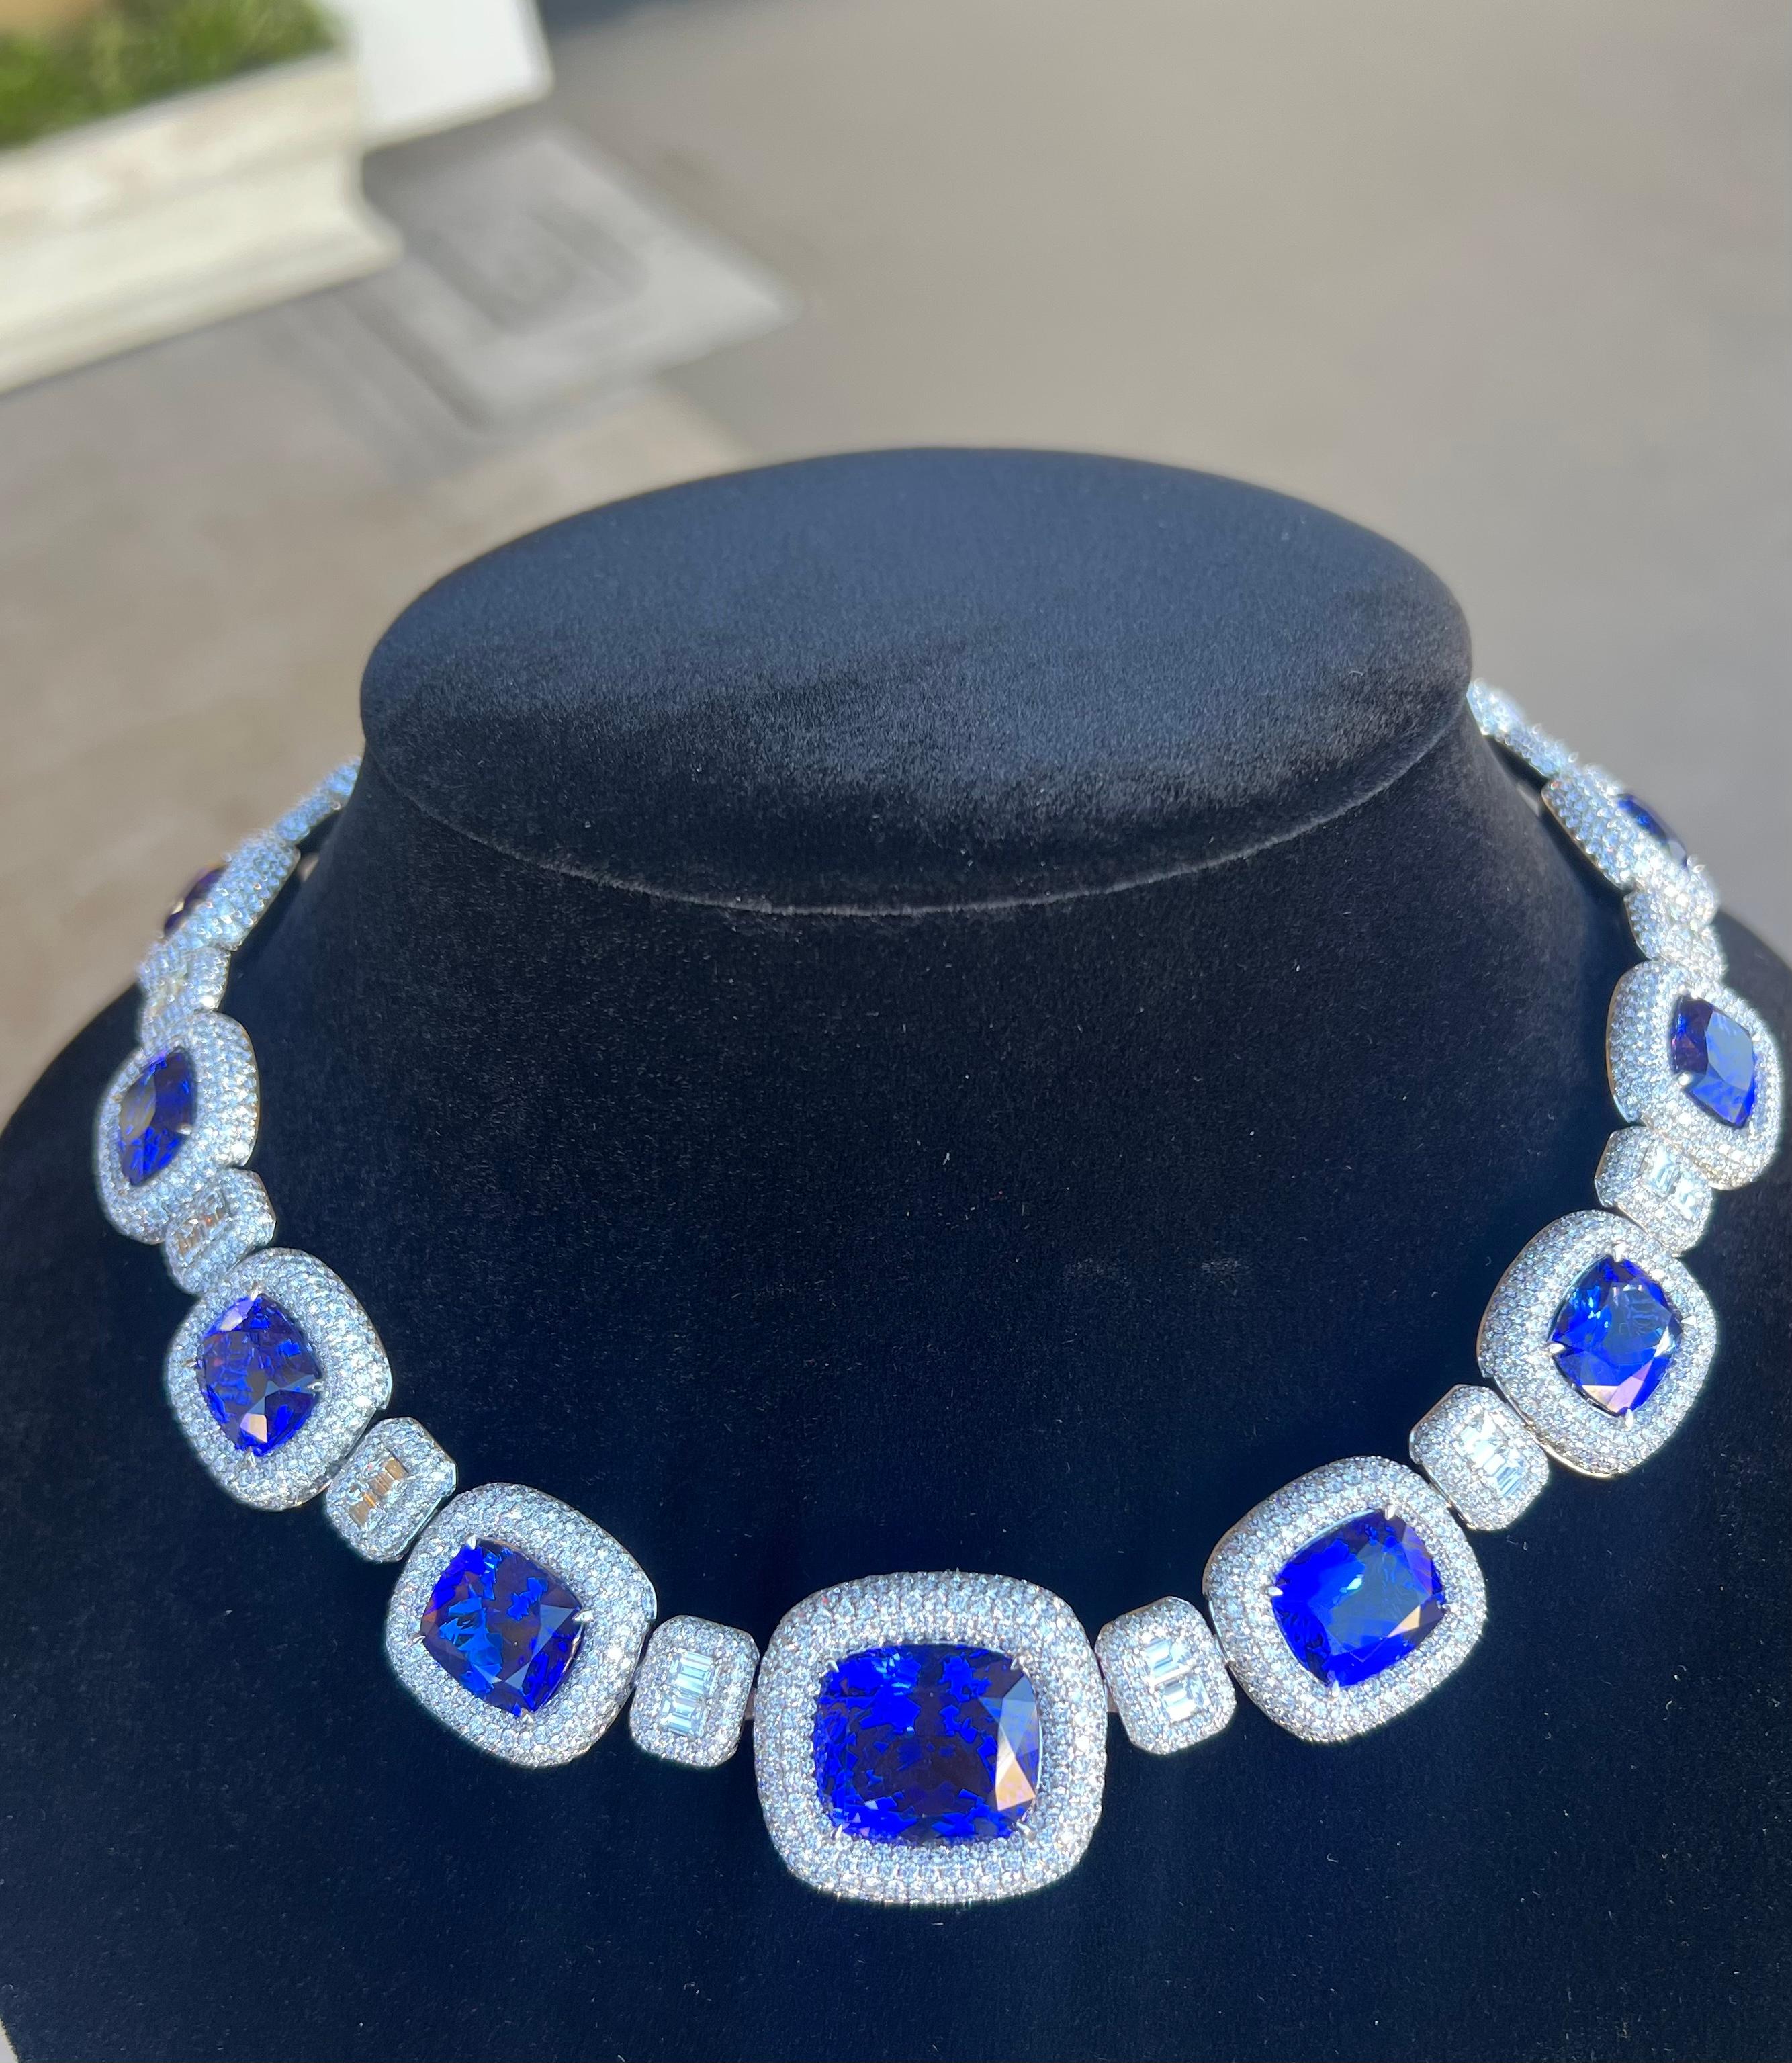 Opulent 211 Carat AAAA Intense Blue Tanzanite and Diamond 18 Karat Gold Necklace 9